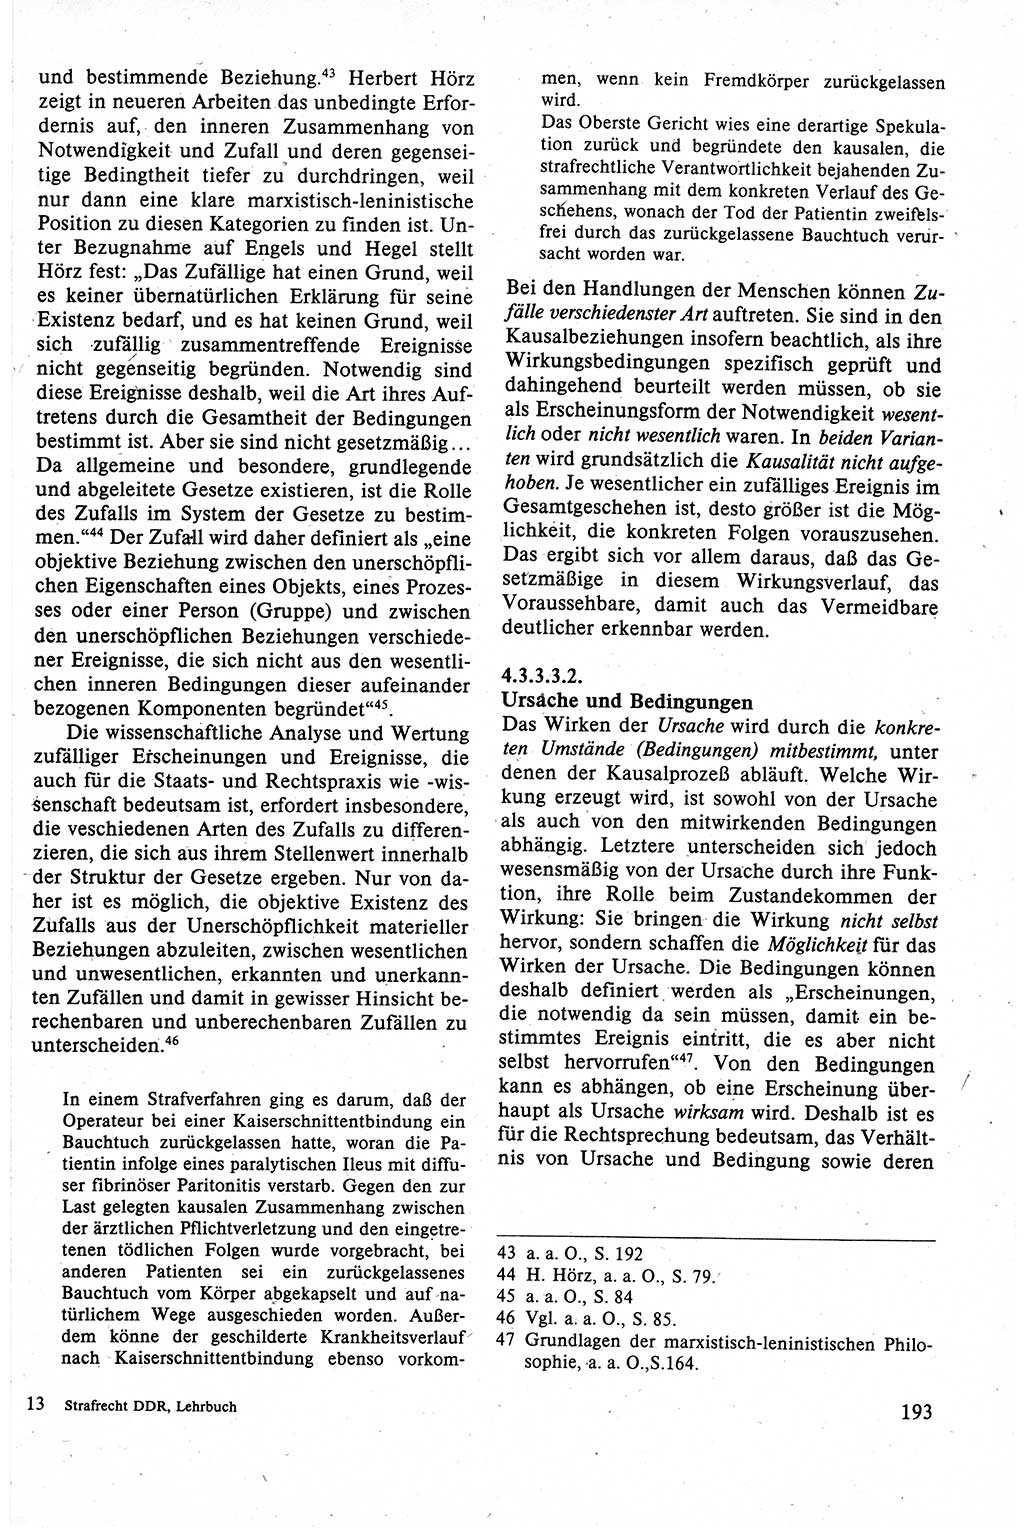 Strafrecht der DDR (Deutsche Demokratische Republik), Lehrbuch 1988, Seite 193 (Strafr. DDR Lb. 1988, S. 193)